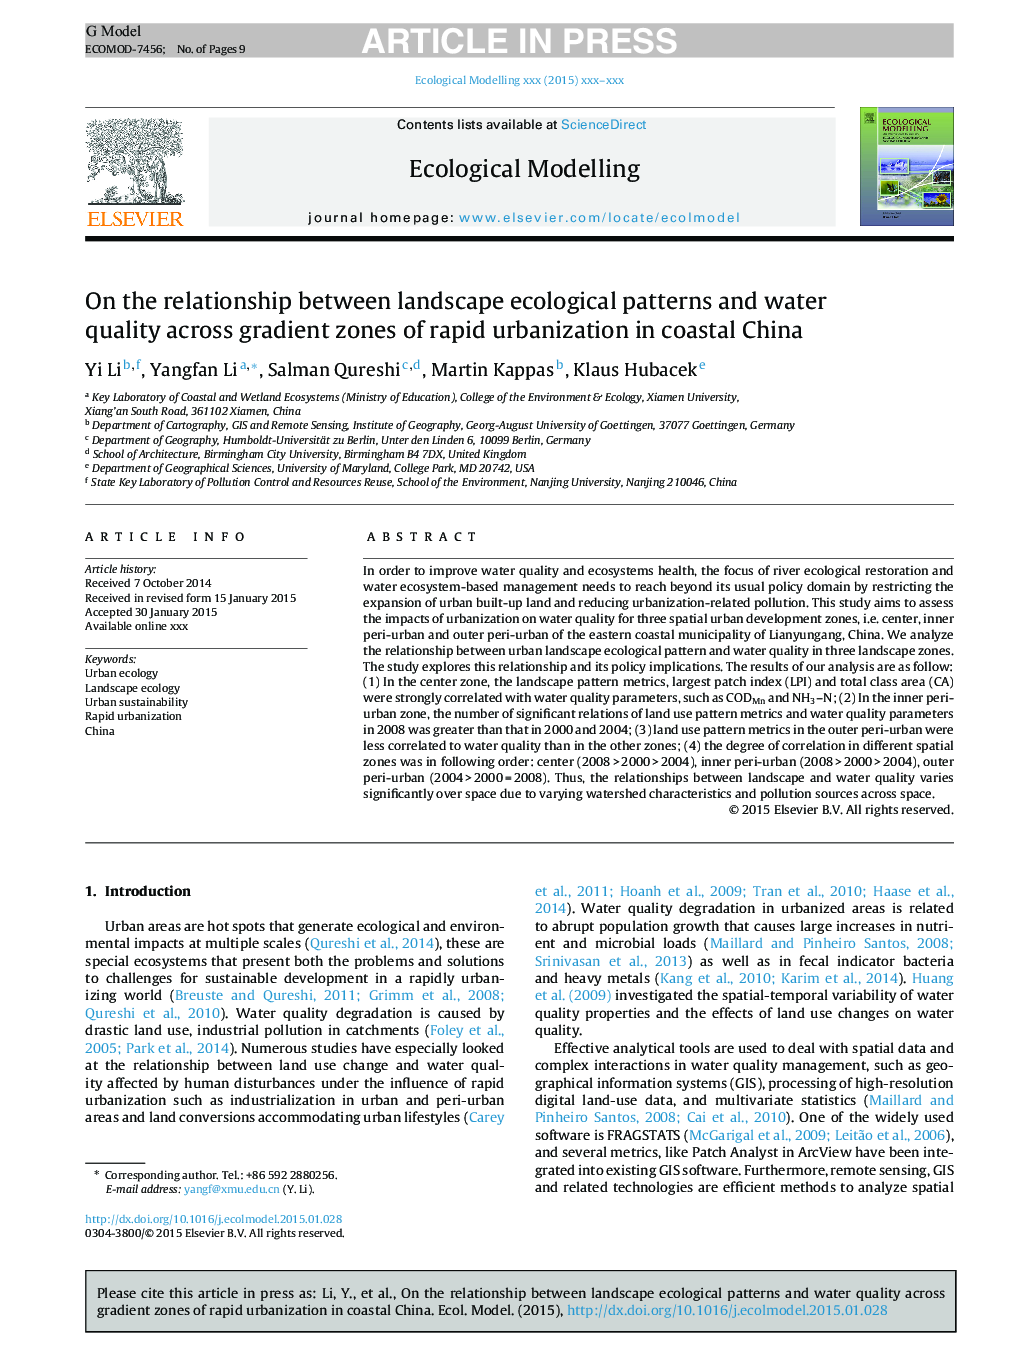 در رابطه بین الگوهای اکولوژیکی چشم انداز و کیفیت آب در میان مناطق گرانشی از شهرت سریع در چین ساحلی 